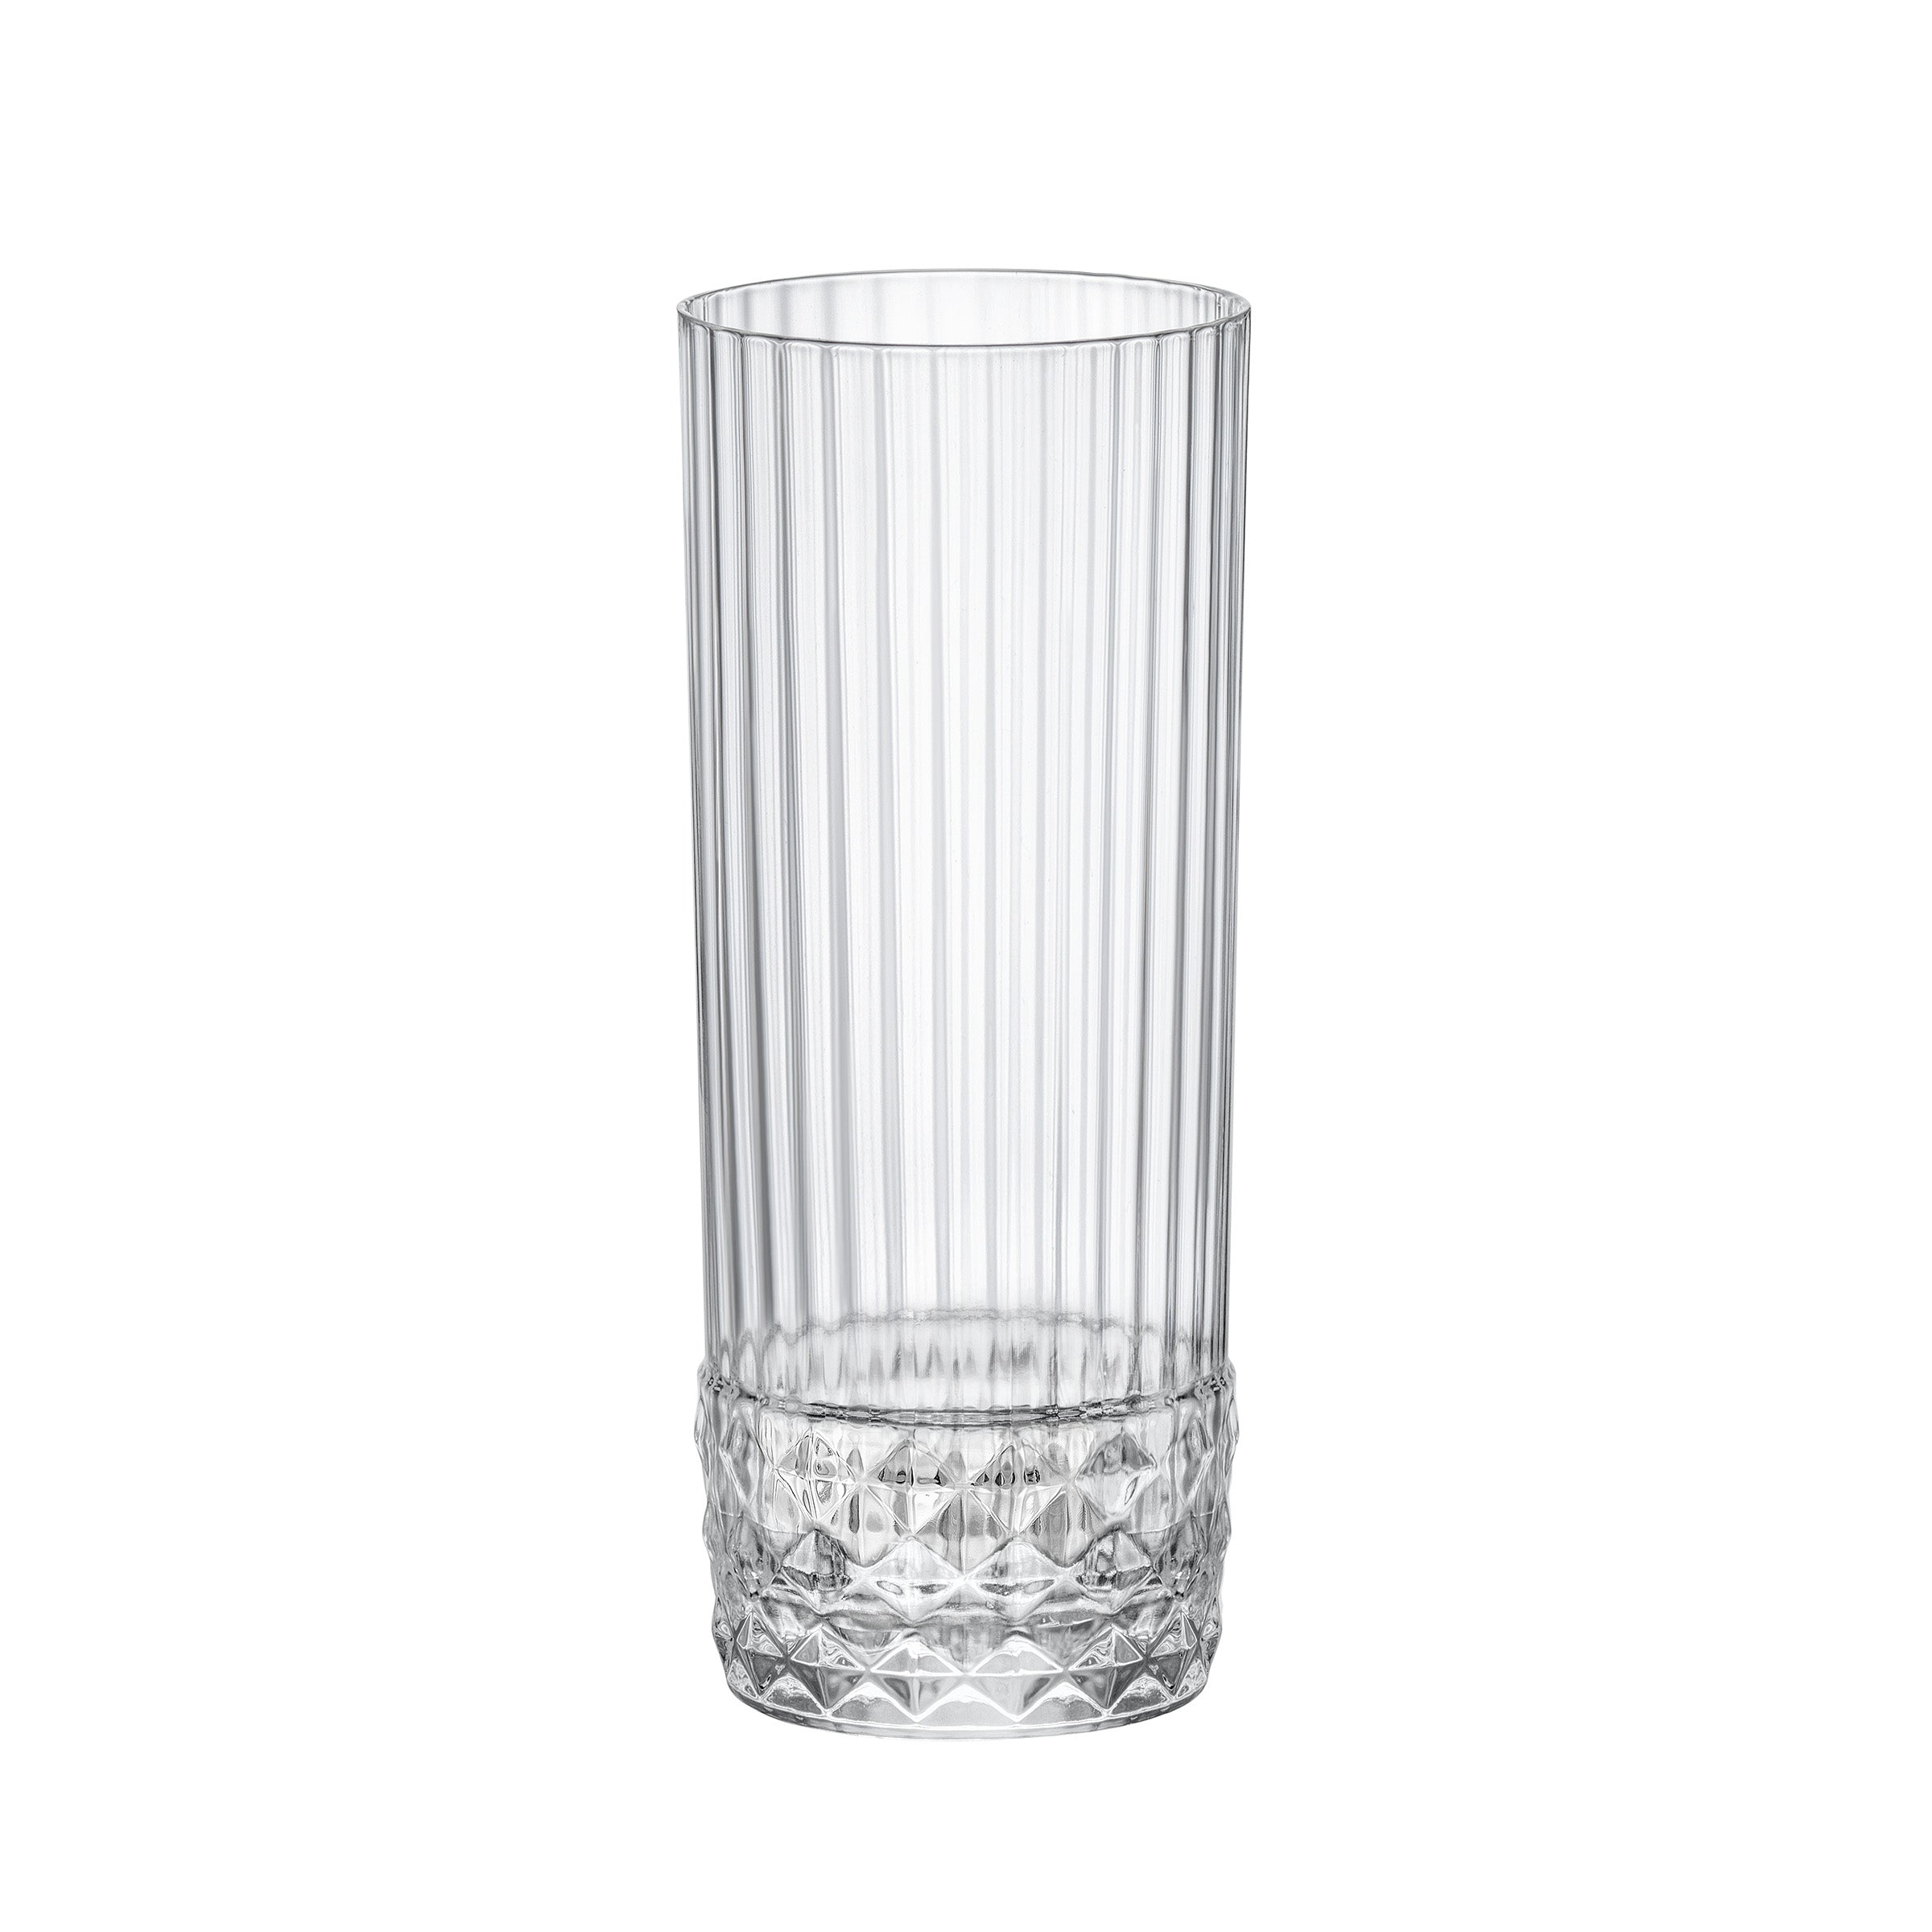 Dorset Crystal Highball Glasses